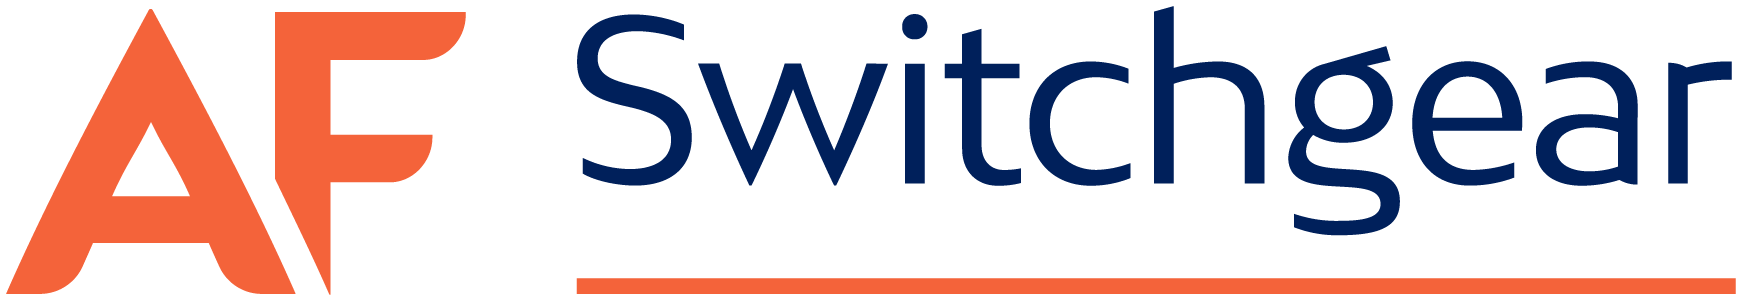 AF Switchgear logo